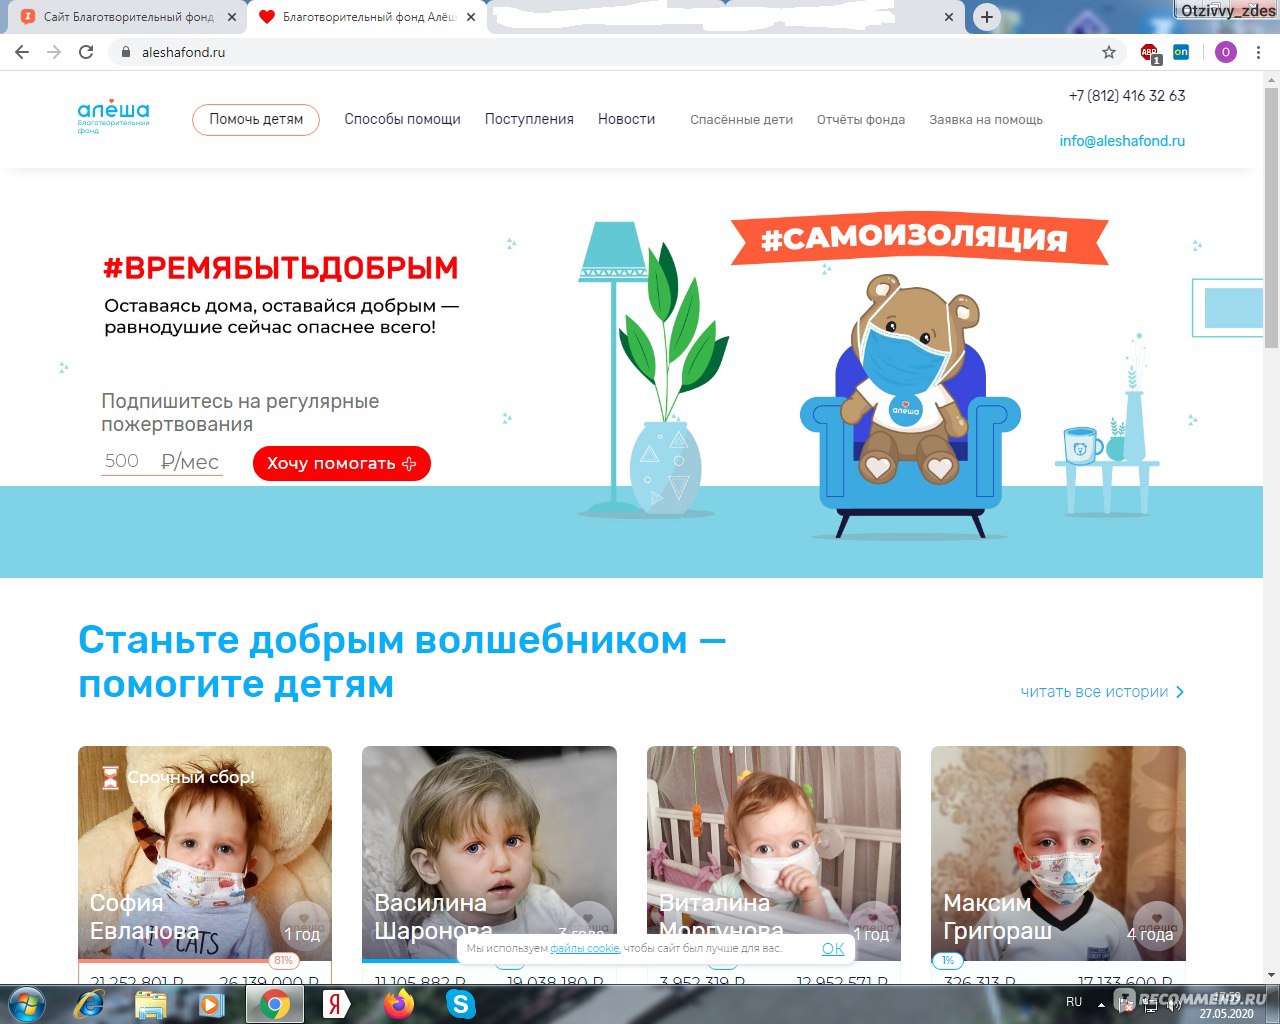 Сайт Благотворительный фонд "Алеша" (www.aleshafond.ru)  фото